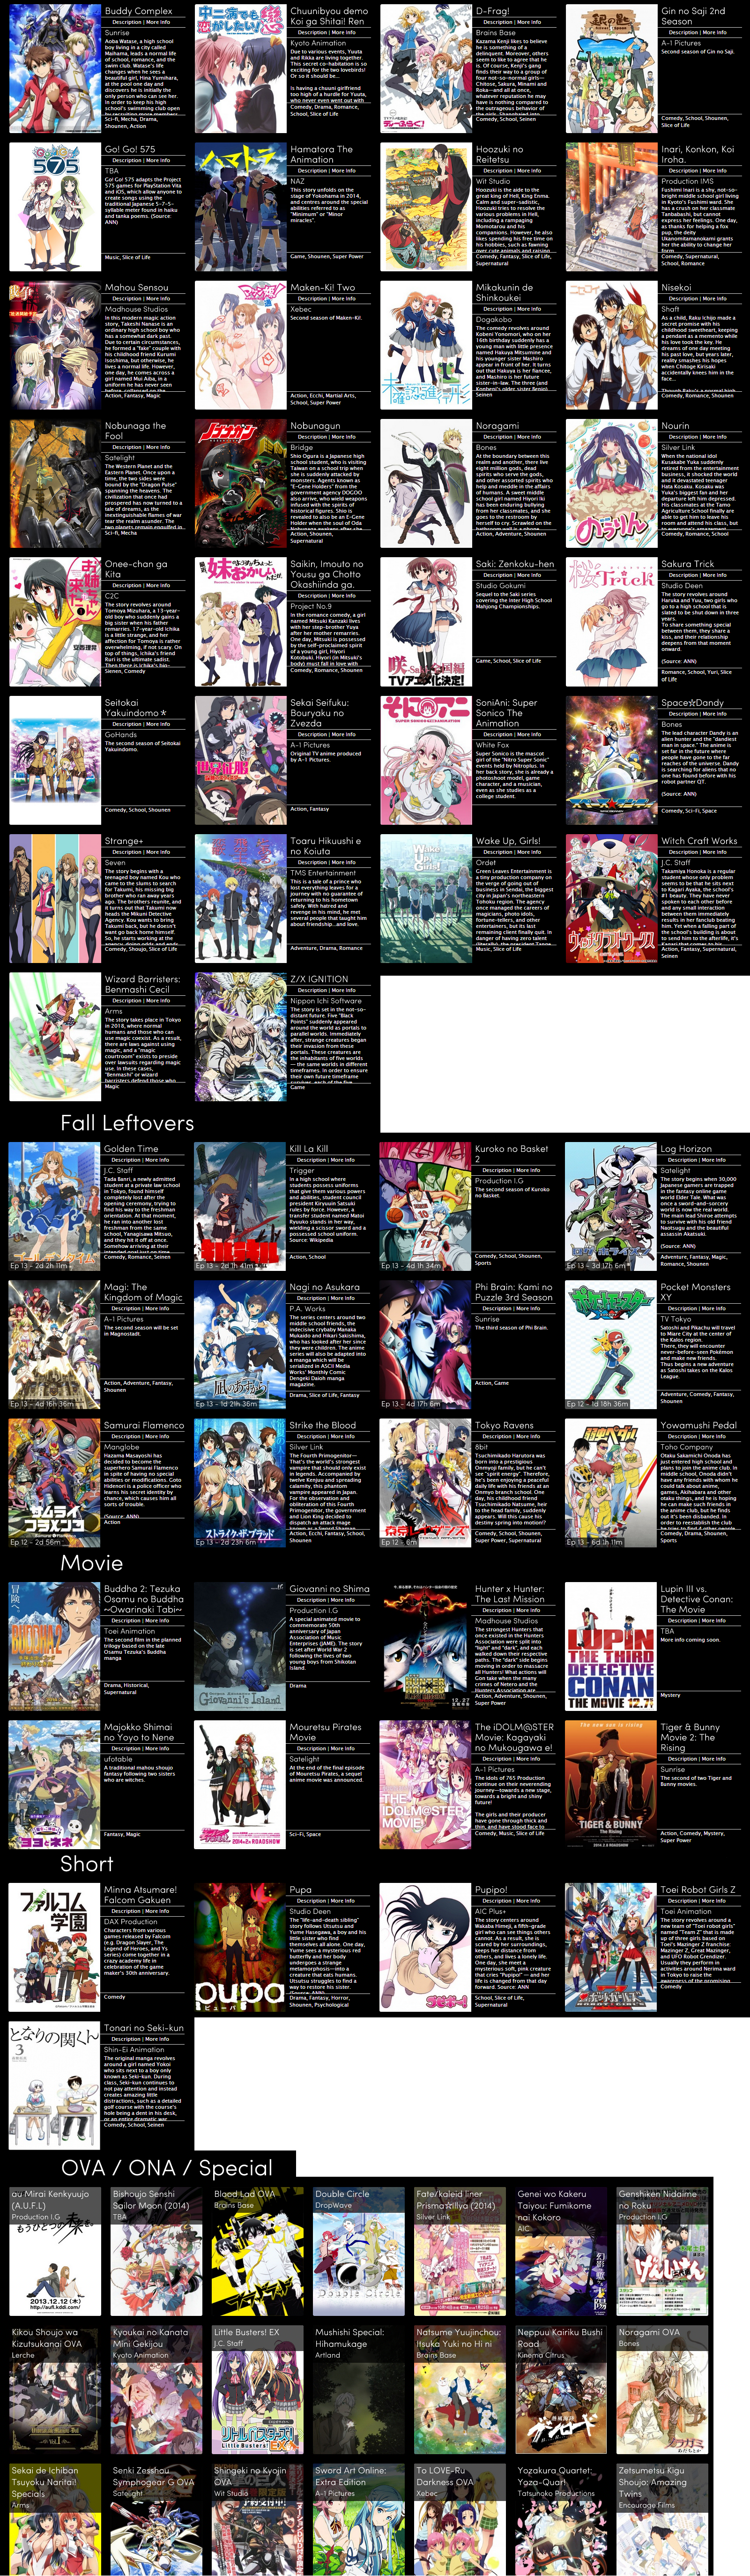 Anime 2013 List